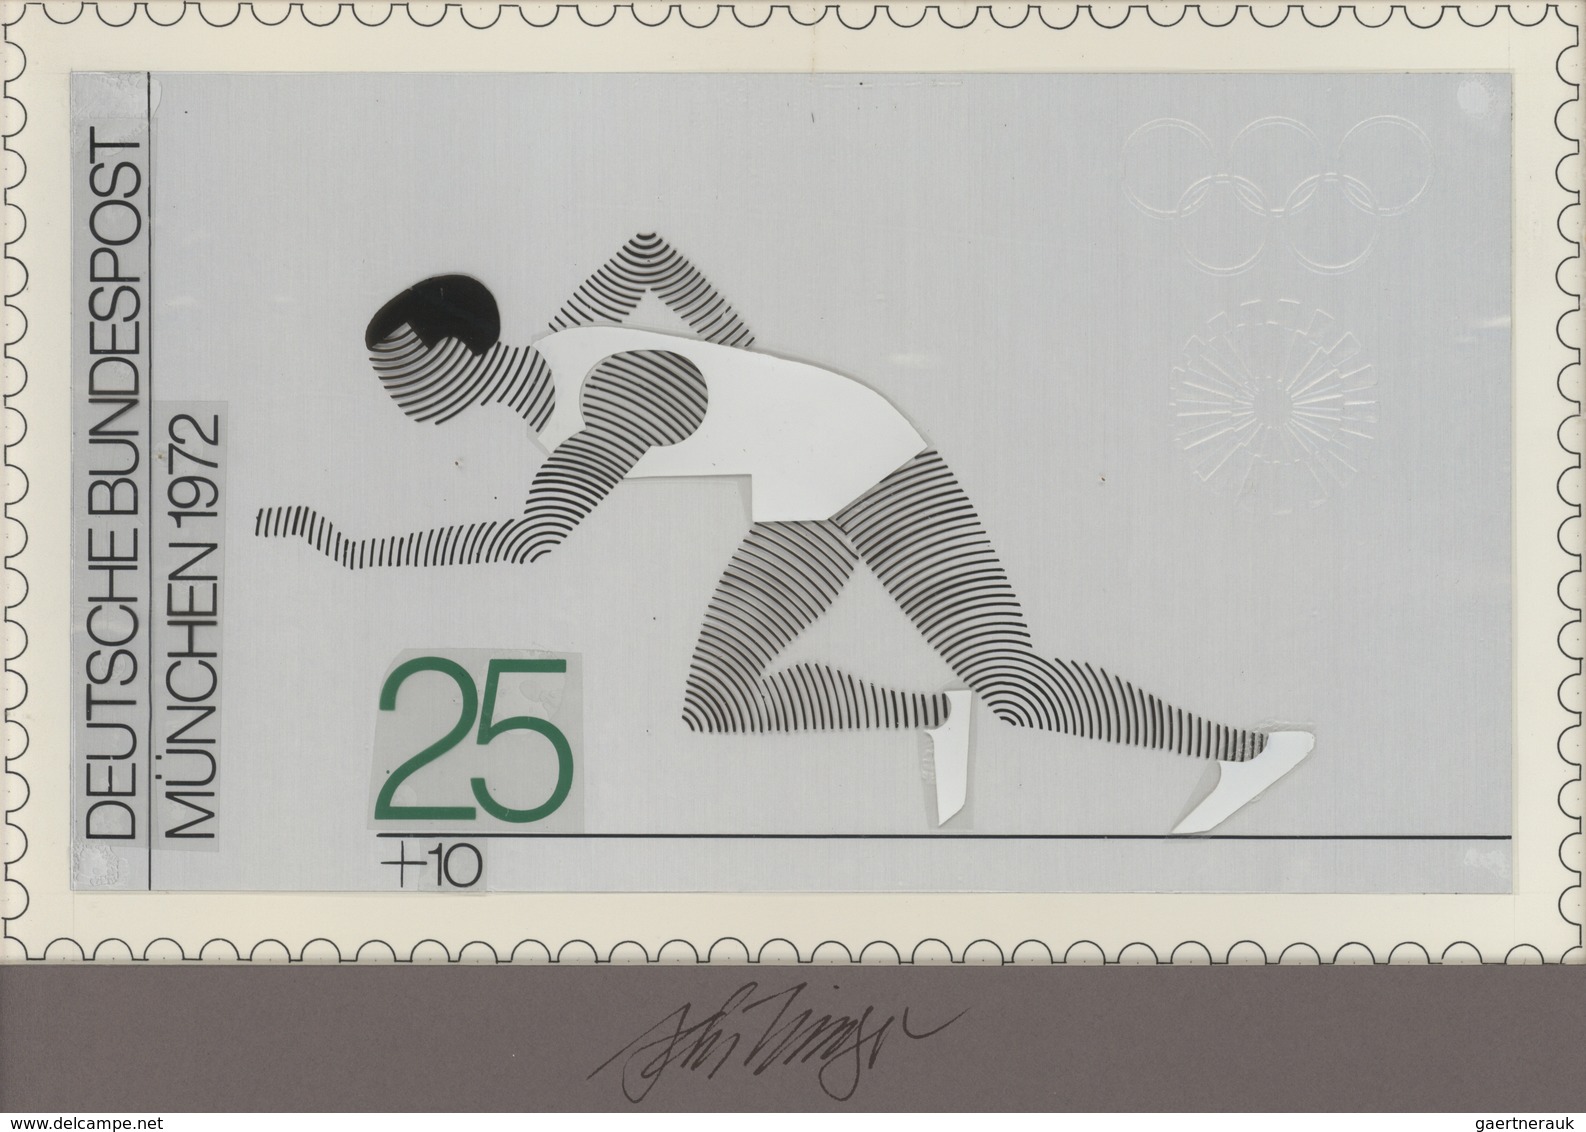 Thematik: Sport-Leichtathletik / Sports-athletics: 1972, Bund, Nicht Angenommener Künstlerentwurf (2 - Athletics